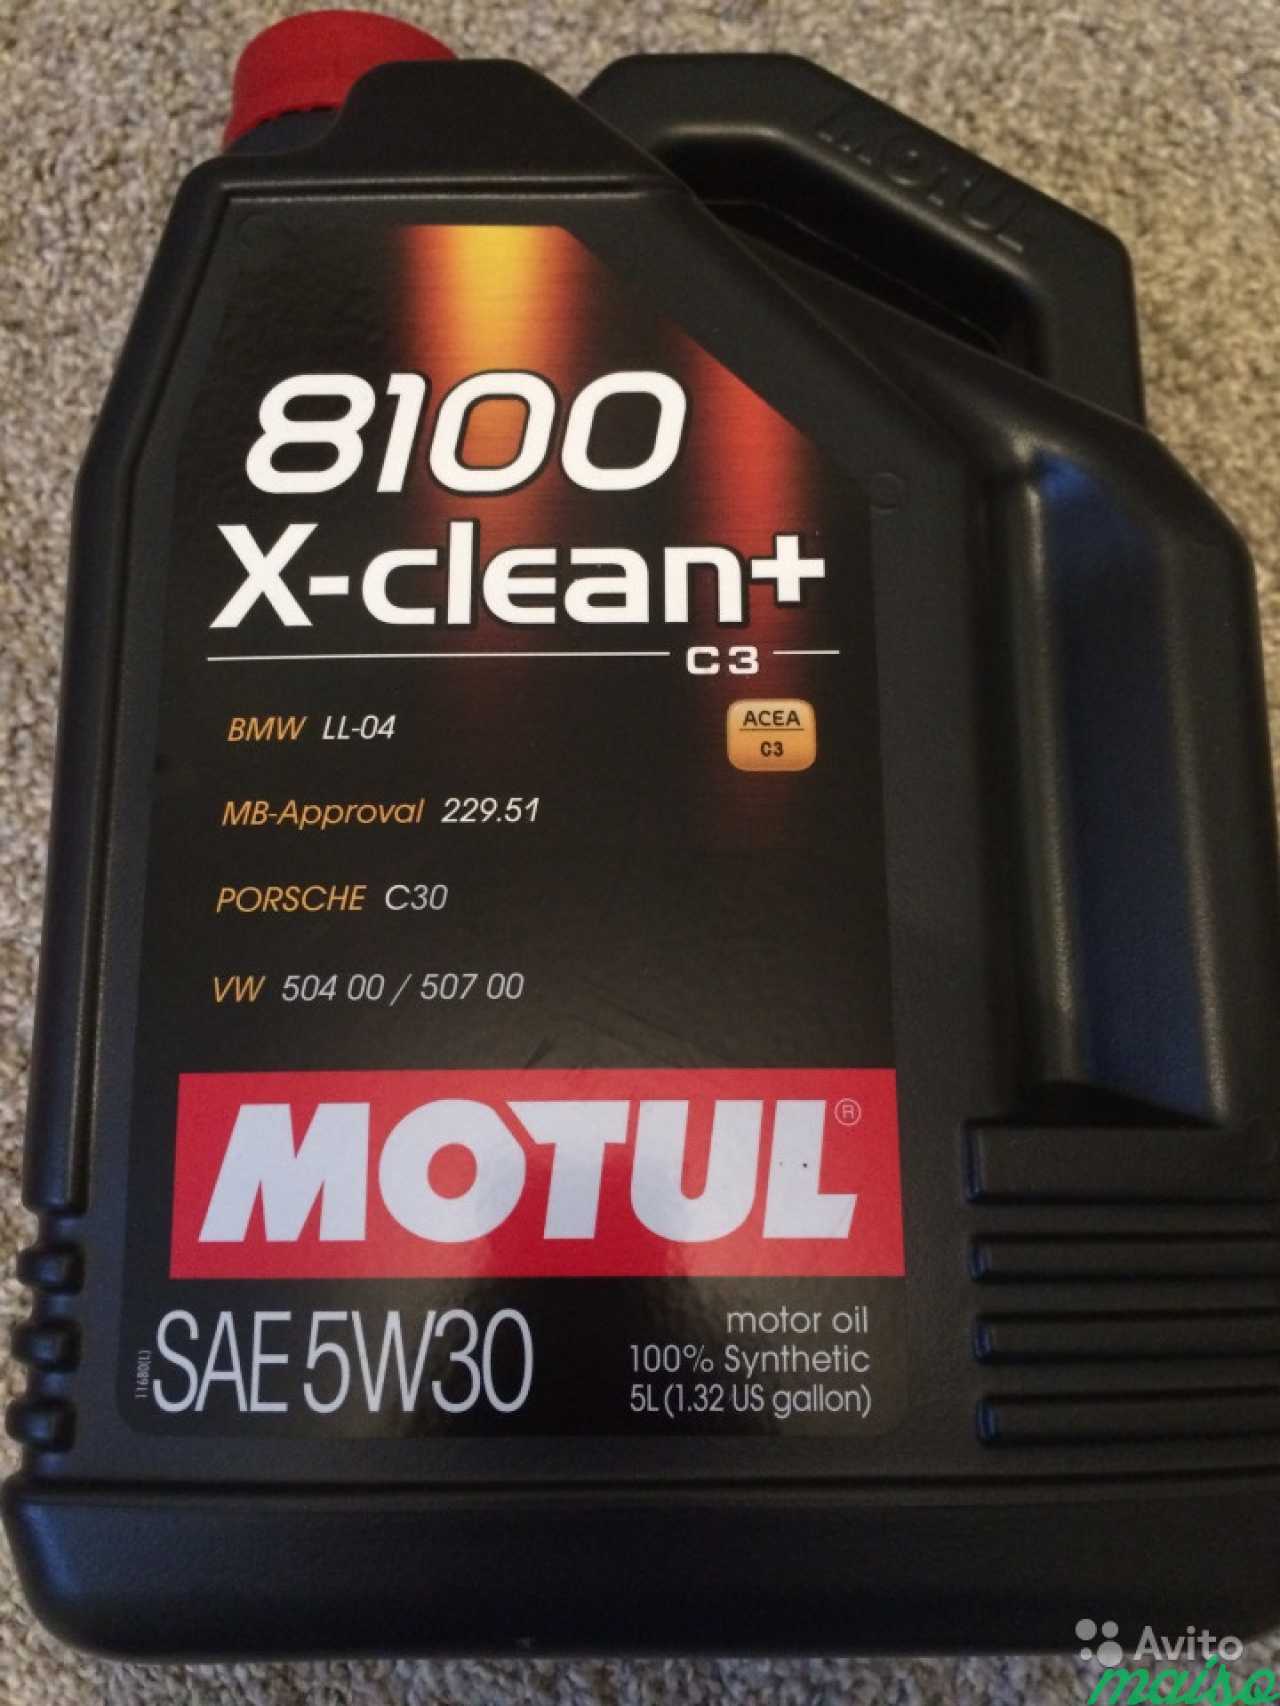 Мотюль масло 5 литров. Мотюль 5w30. Motul x clean+ 5w30. Motul 5w30 8100 x-clean 5л ll04. Масло Motul 8100 x-clean+ 5w30.